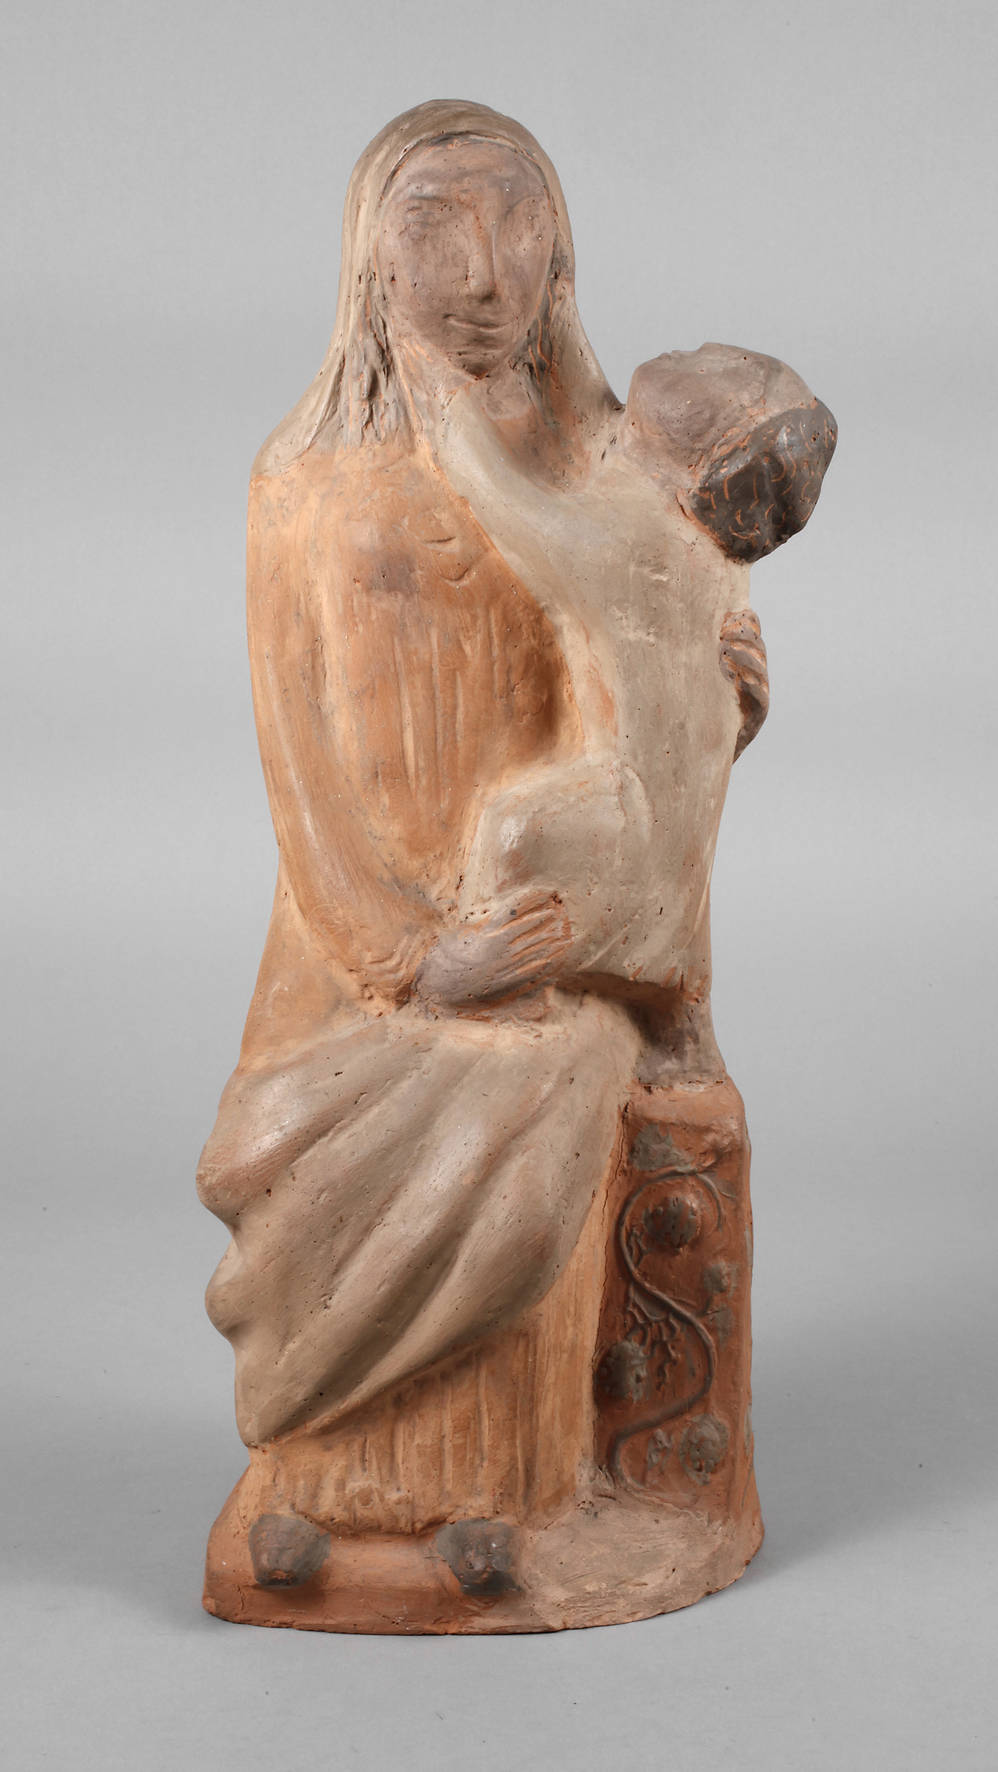 Maria mit dem Kind Terracotta